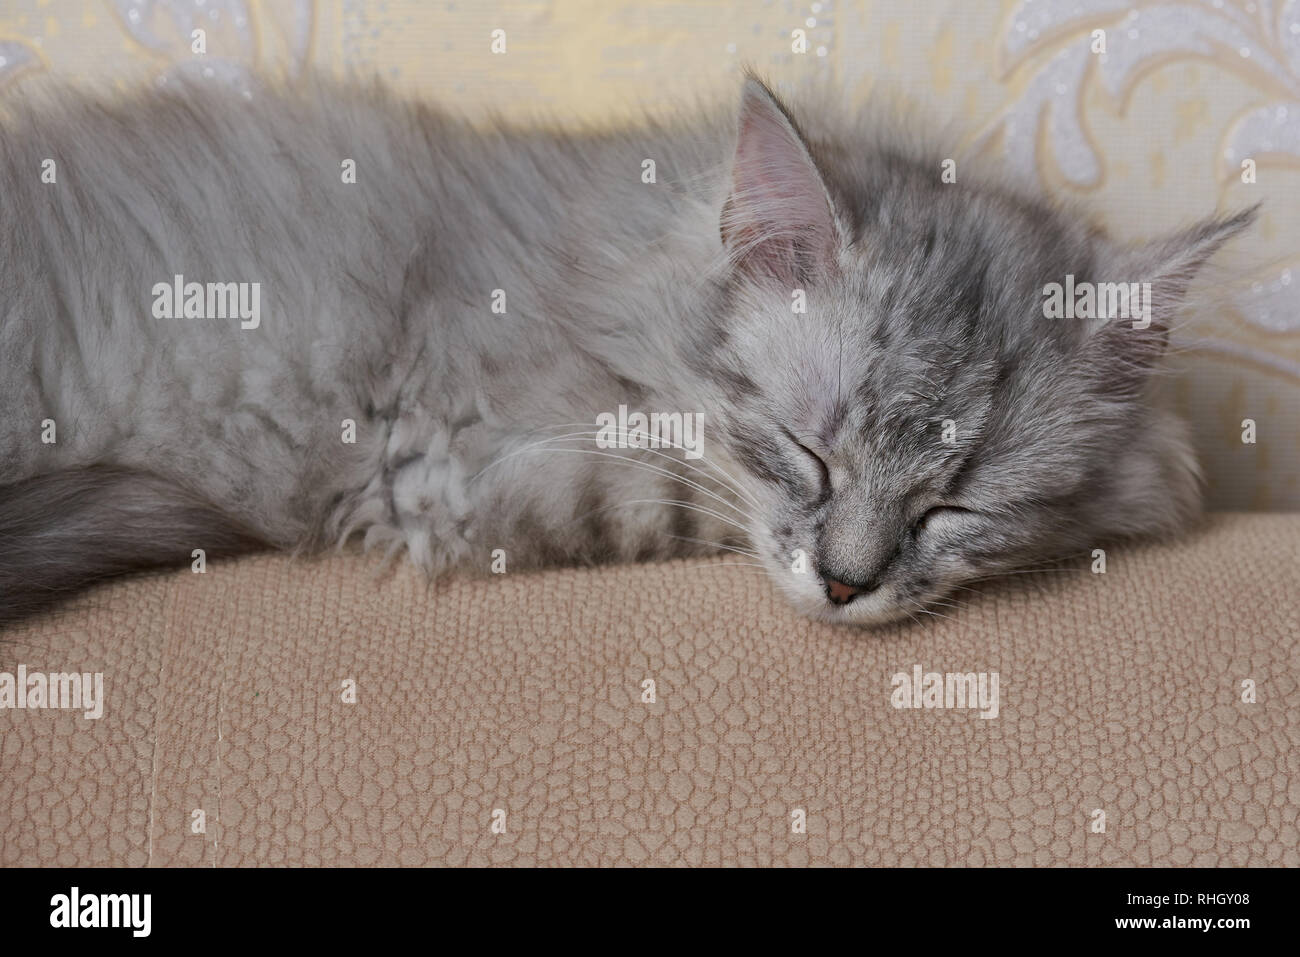 Sweet dormir petits chat gris sur canapé soft accueil Banque D'Images